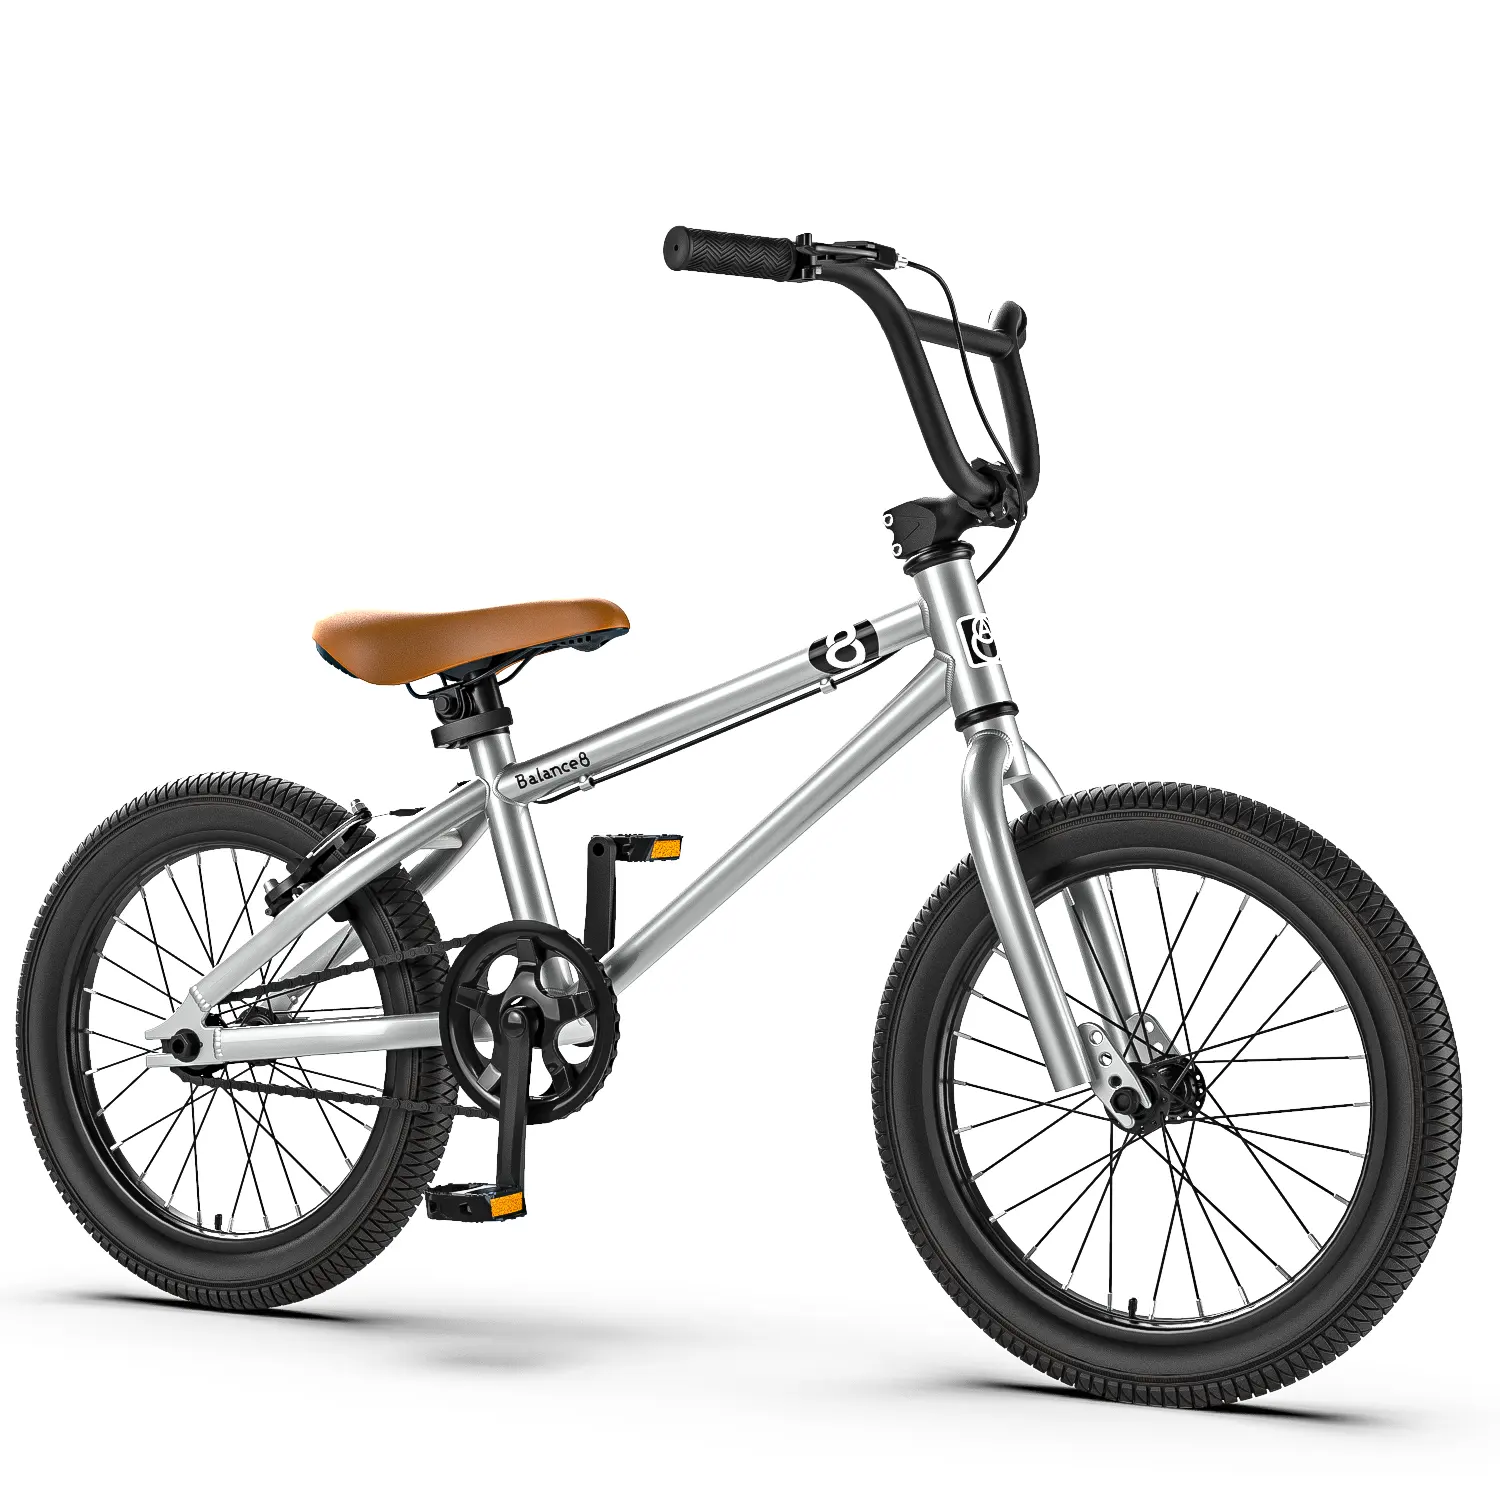 BMX אופני זול מחיר ילדים קטן אופניים 12 14 16 18 20 24 לילד וילדה גבוהה באיכות bmx אופניים לילדים